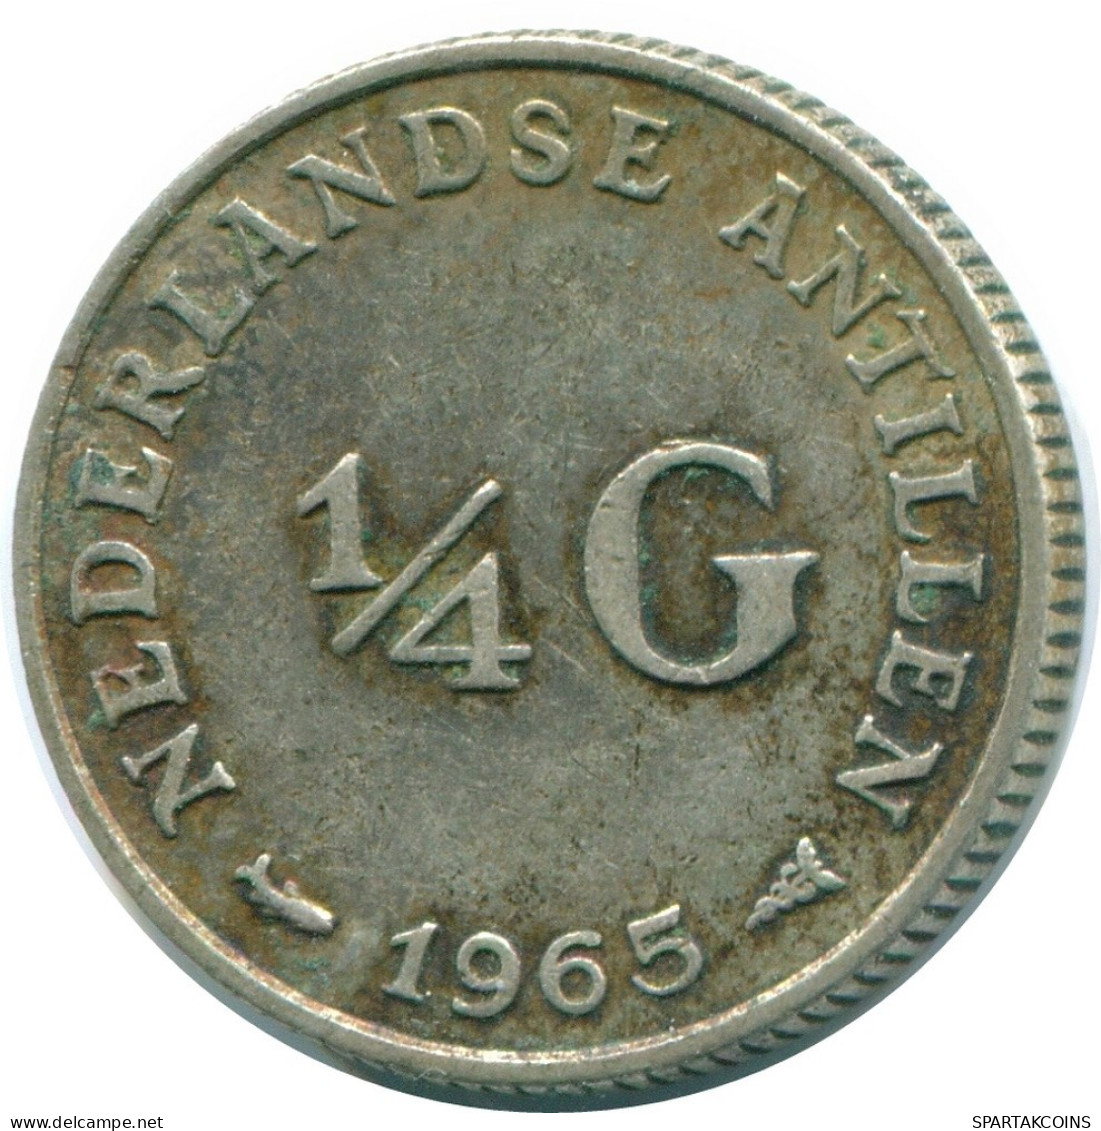 1/4 GULDEN 1965 NIEDERLÄNDISCHE ANTILLEN SILBER Koloniale Münze #NL11344.4.D.A - Antille Olandesi